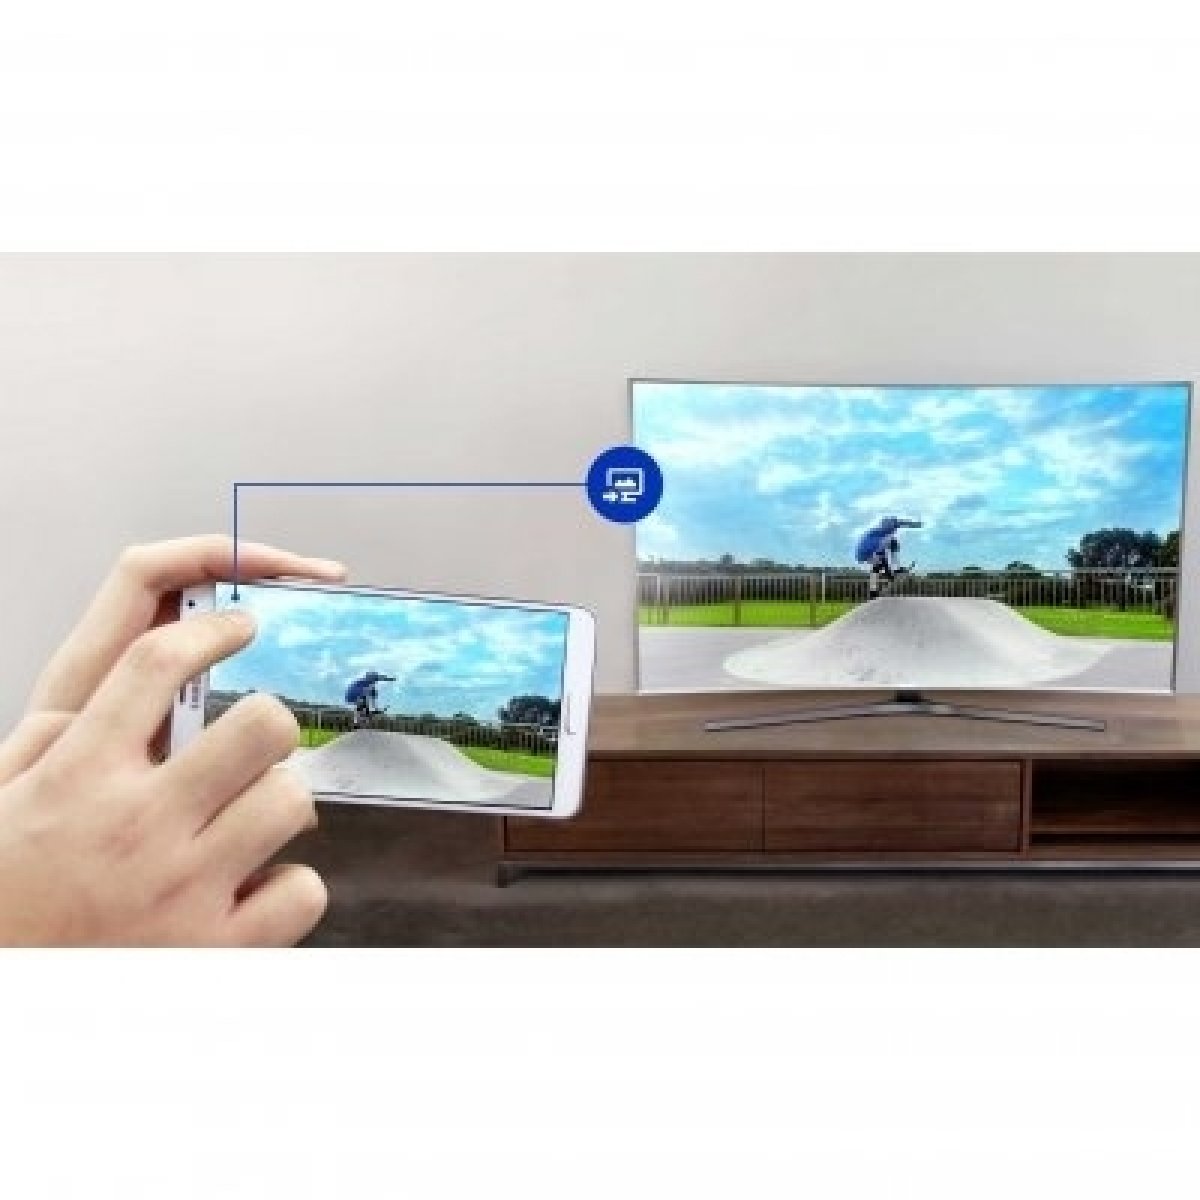 Prepojte televízor s inými zariadeniami pomocou Samsung Easy Sharing